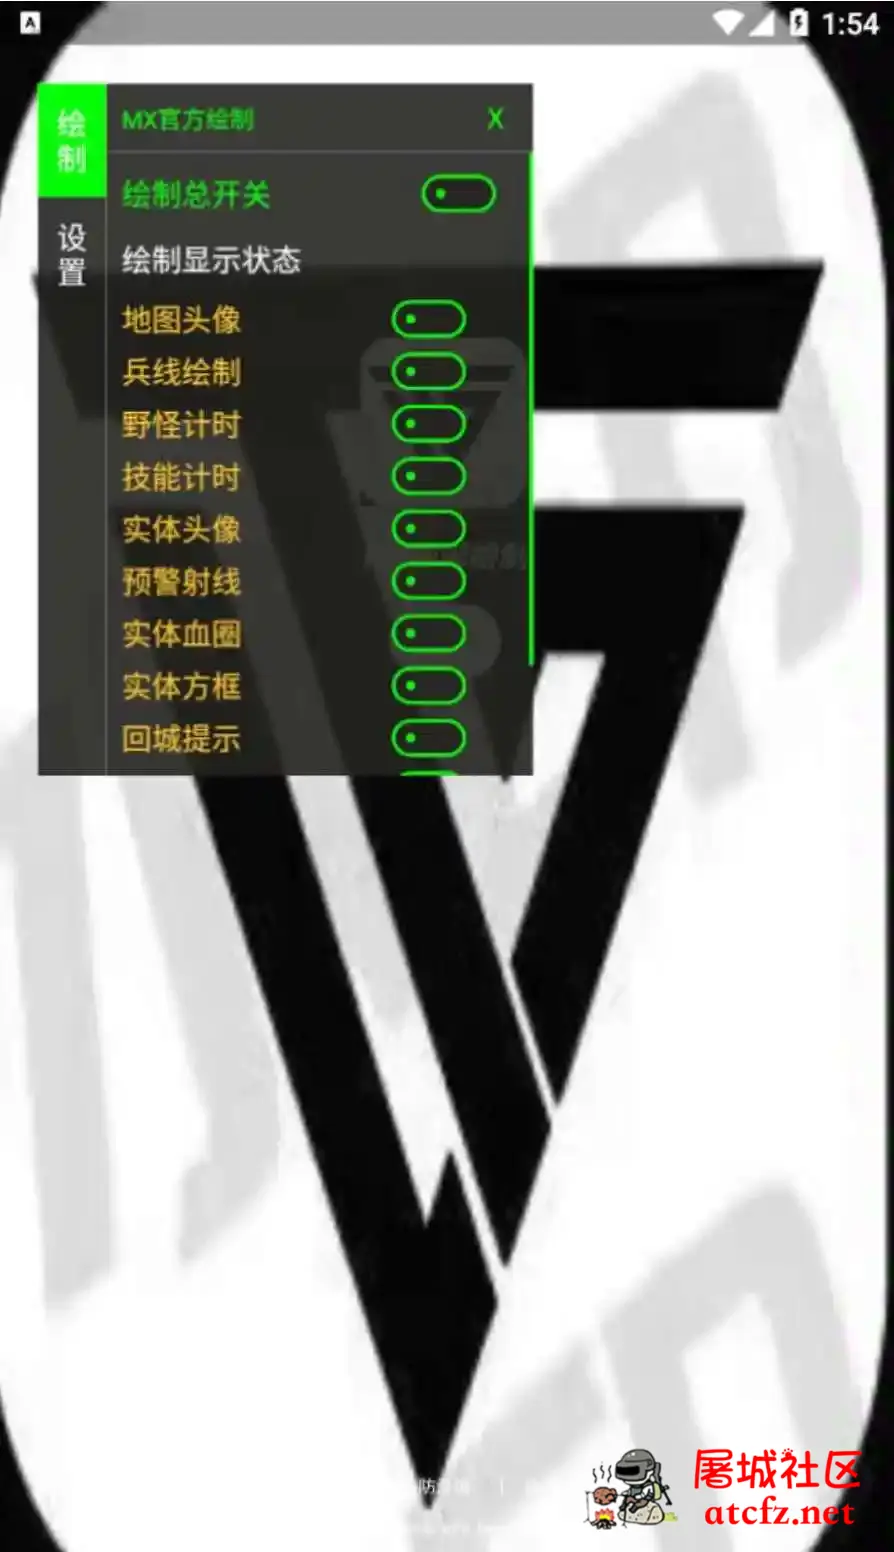 王者荣耀MX绘制透视CD野怪计时插件破解版 屠城辅助网www.tcfz1.com3529